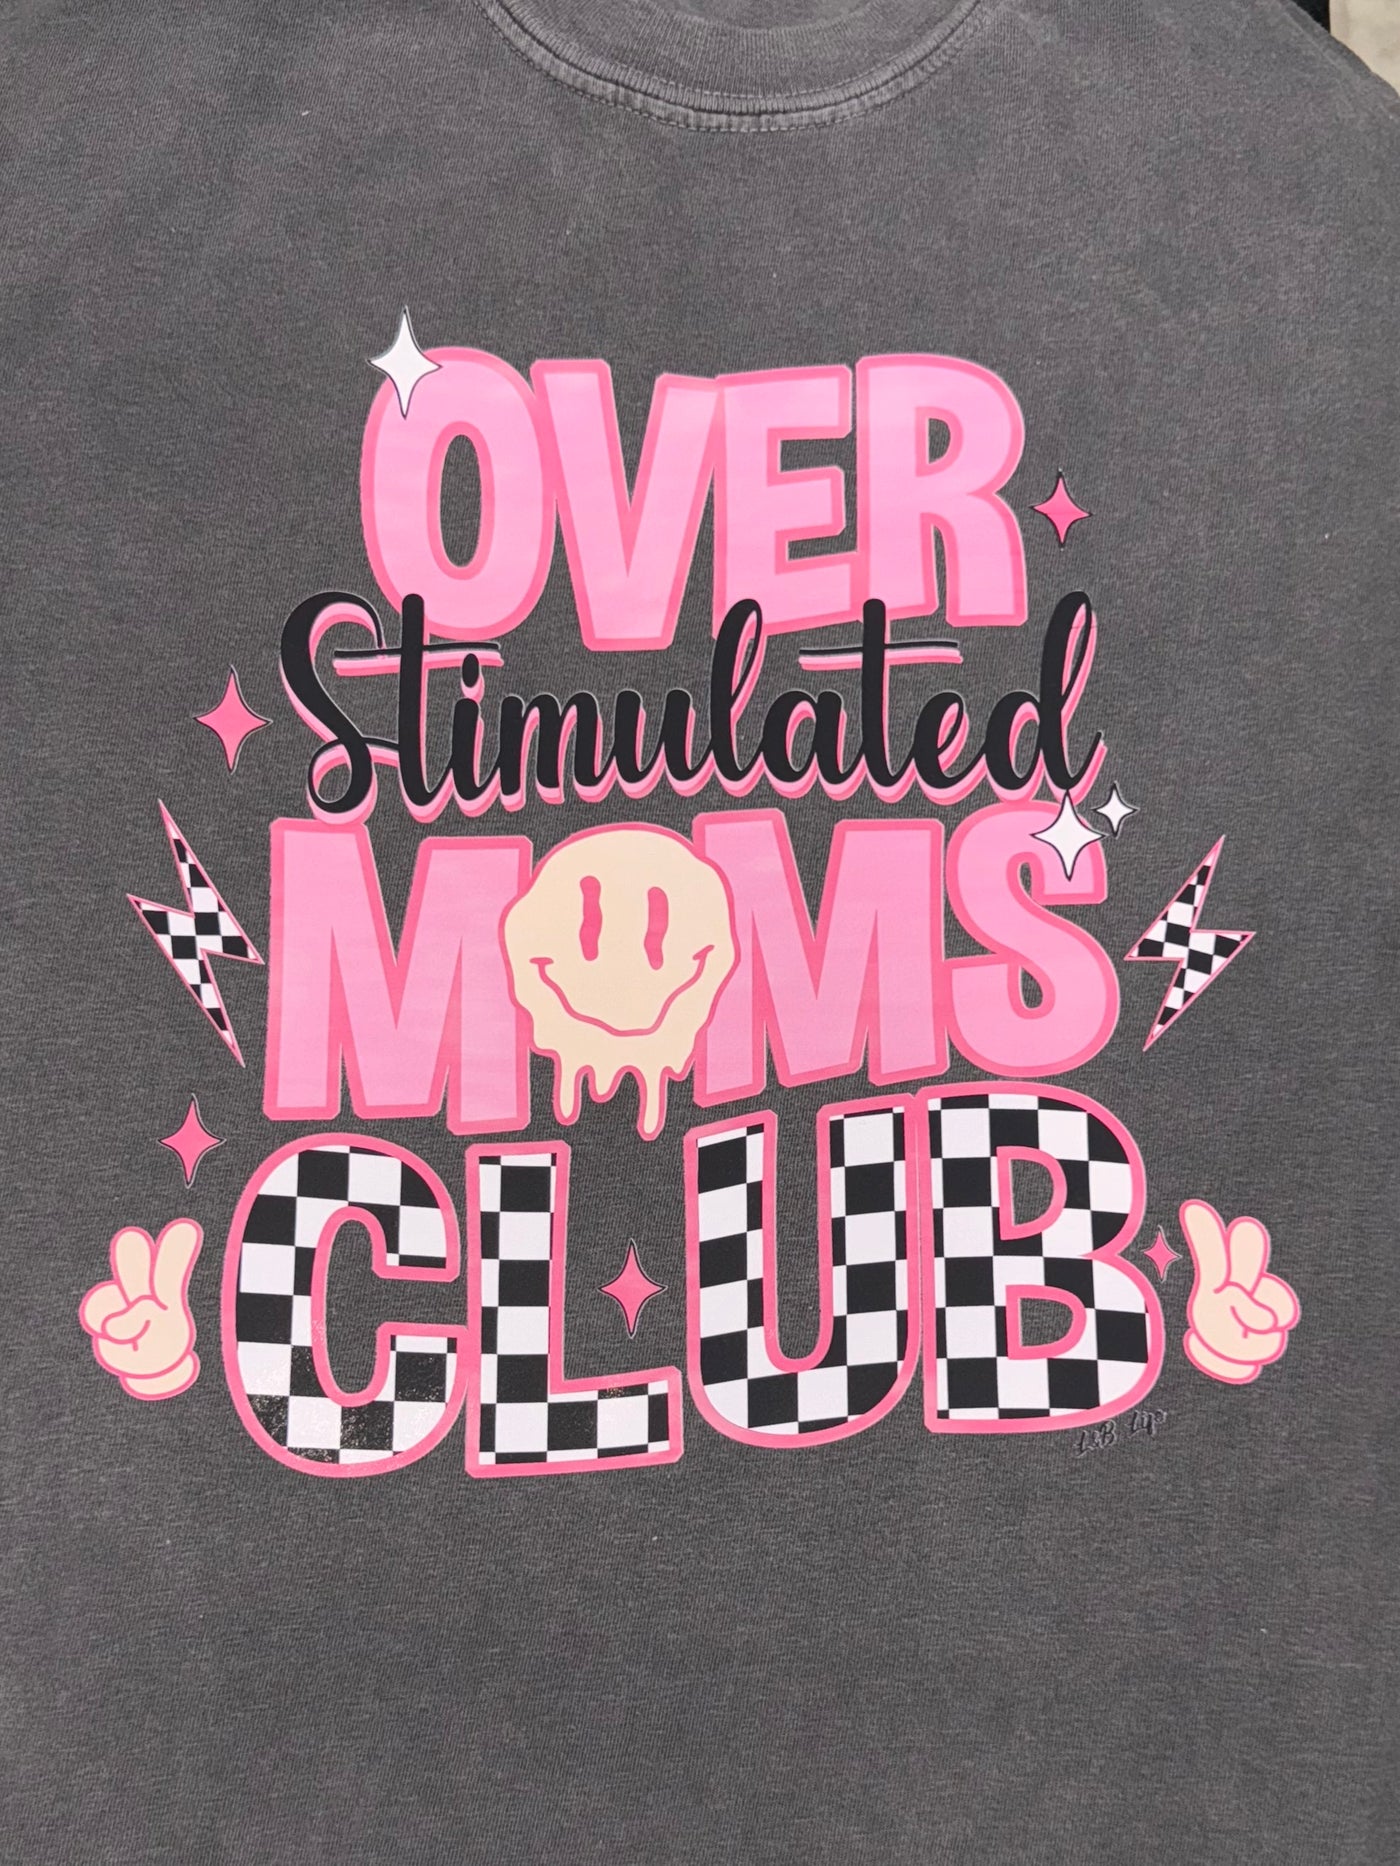 Overstimulated Moms Club tee